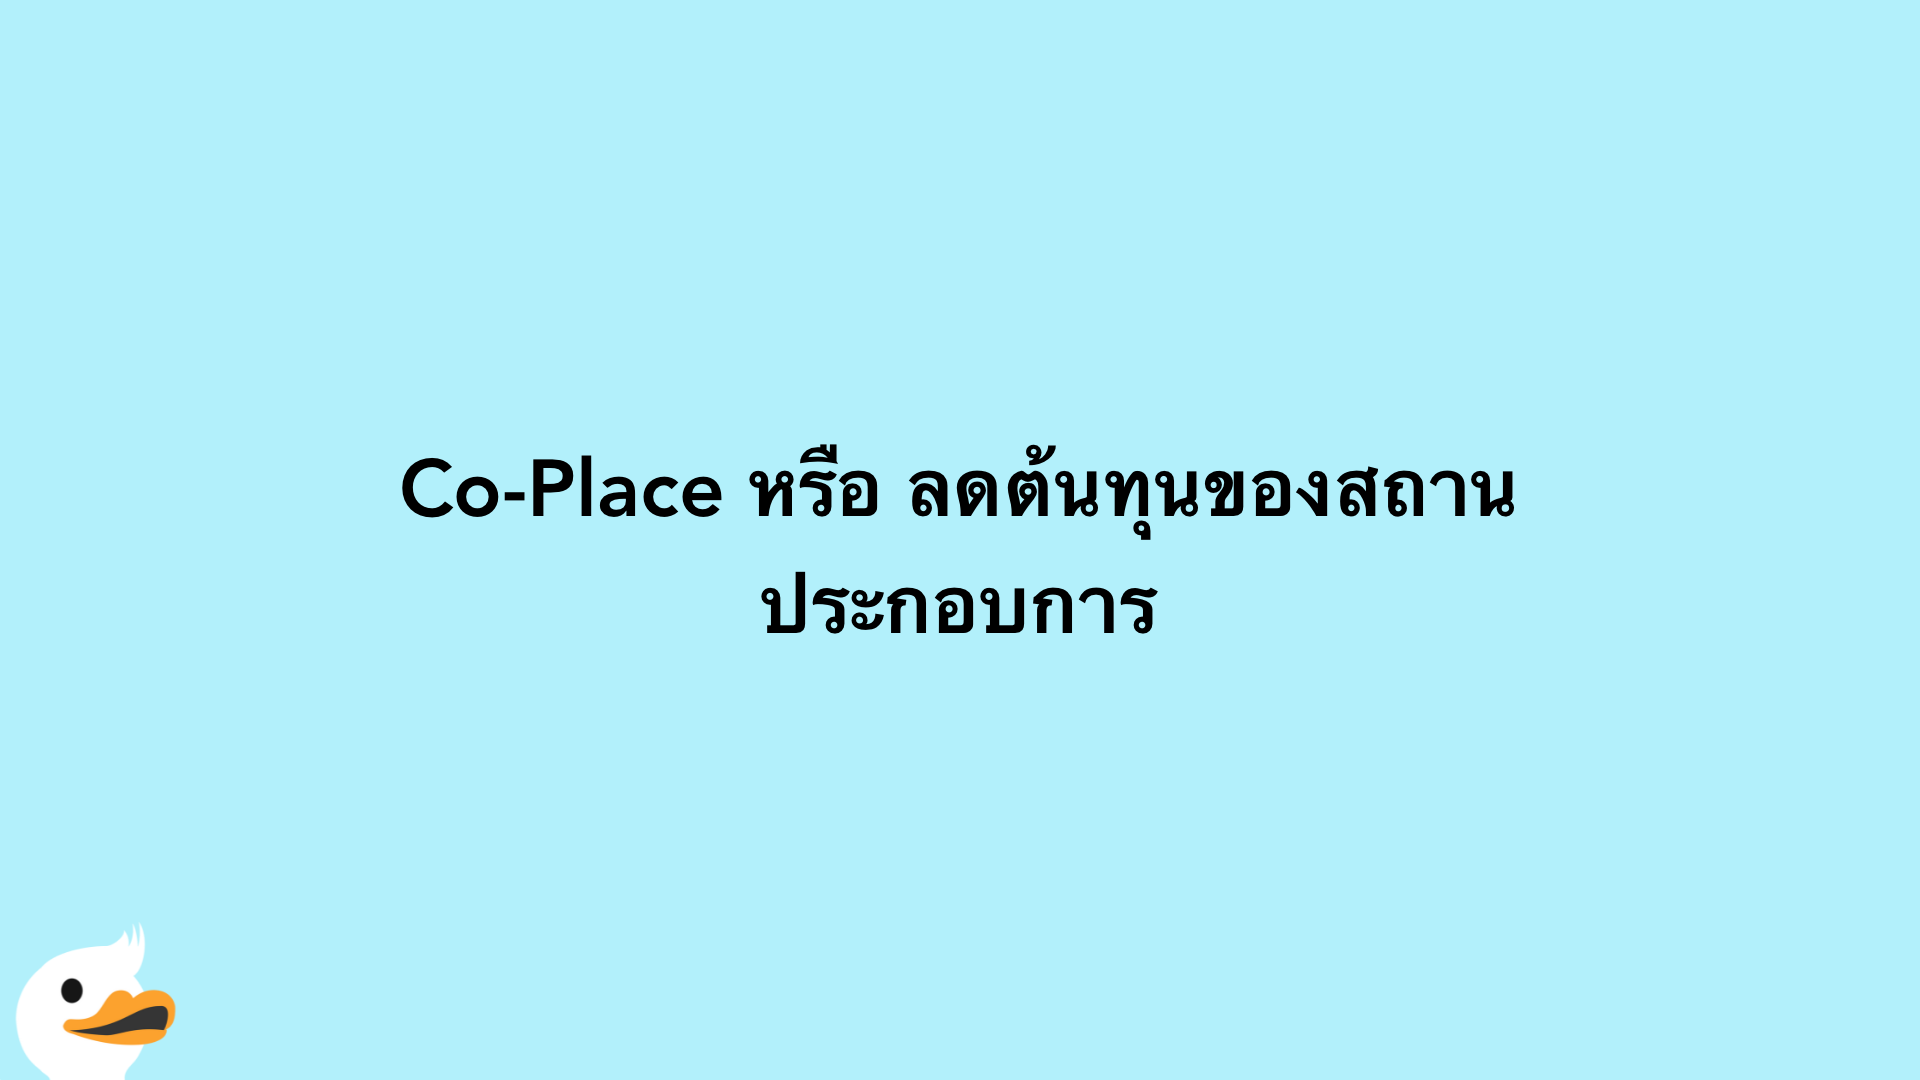 Co-Place หรือ ลดต้นทุนของสถานประกอบการ